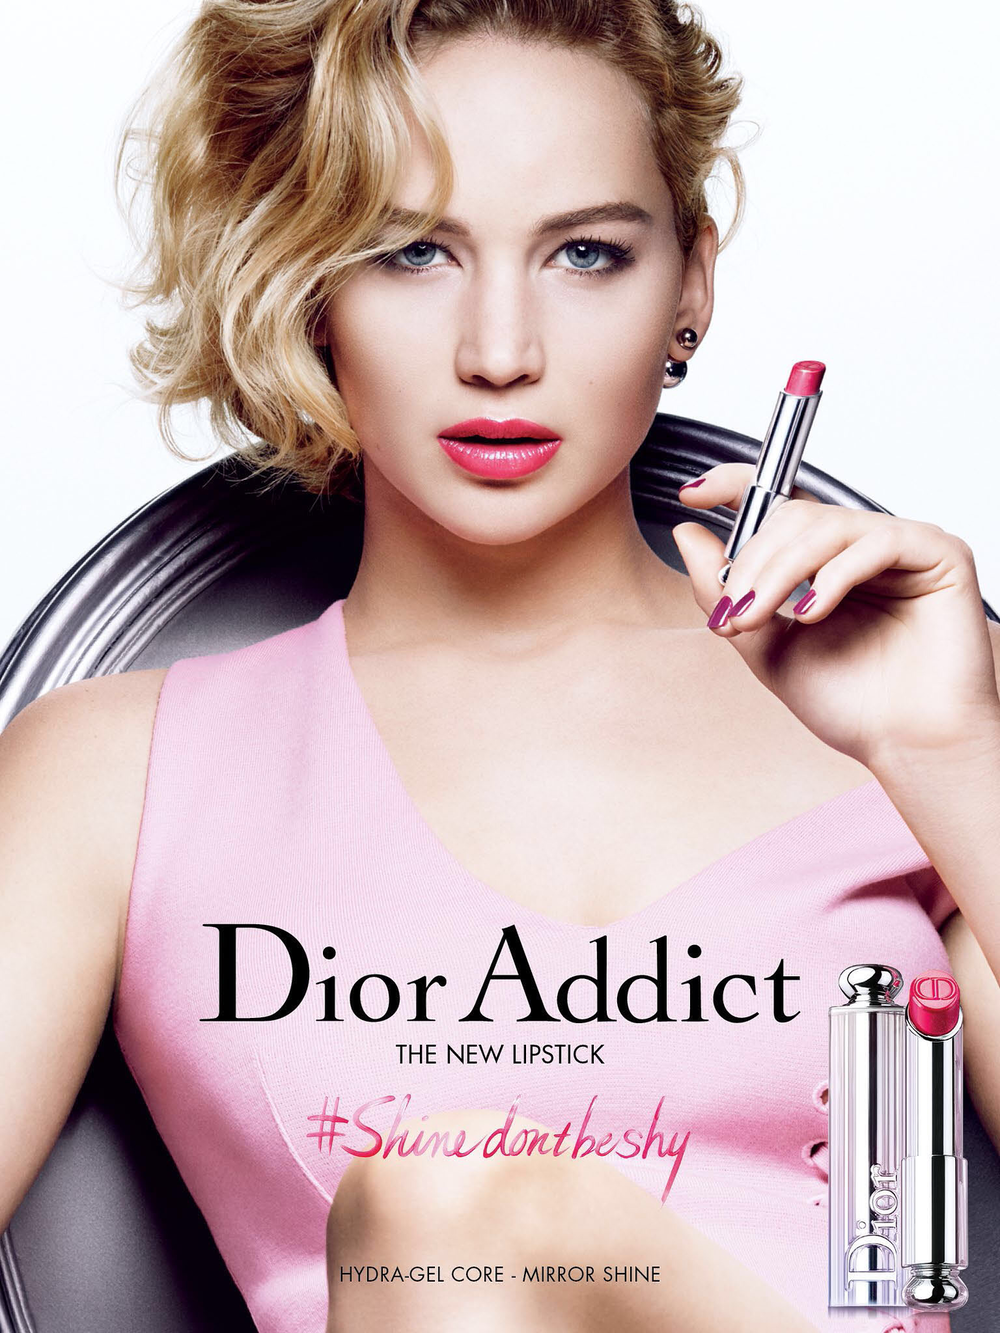 Dior Jennifer Lawrence (2).png